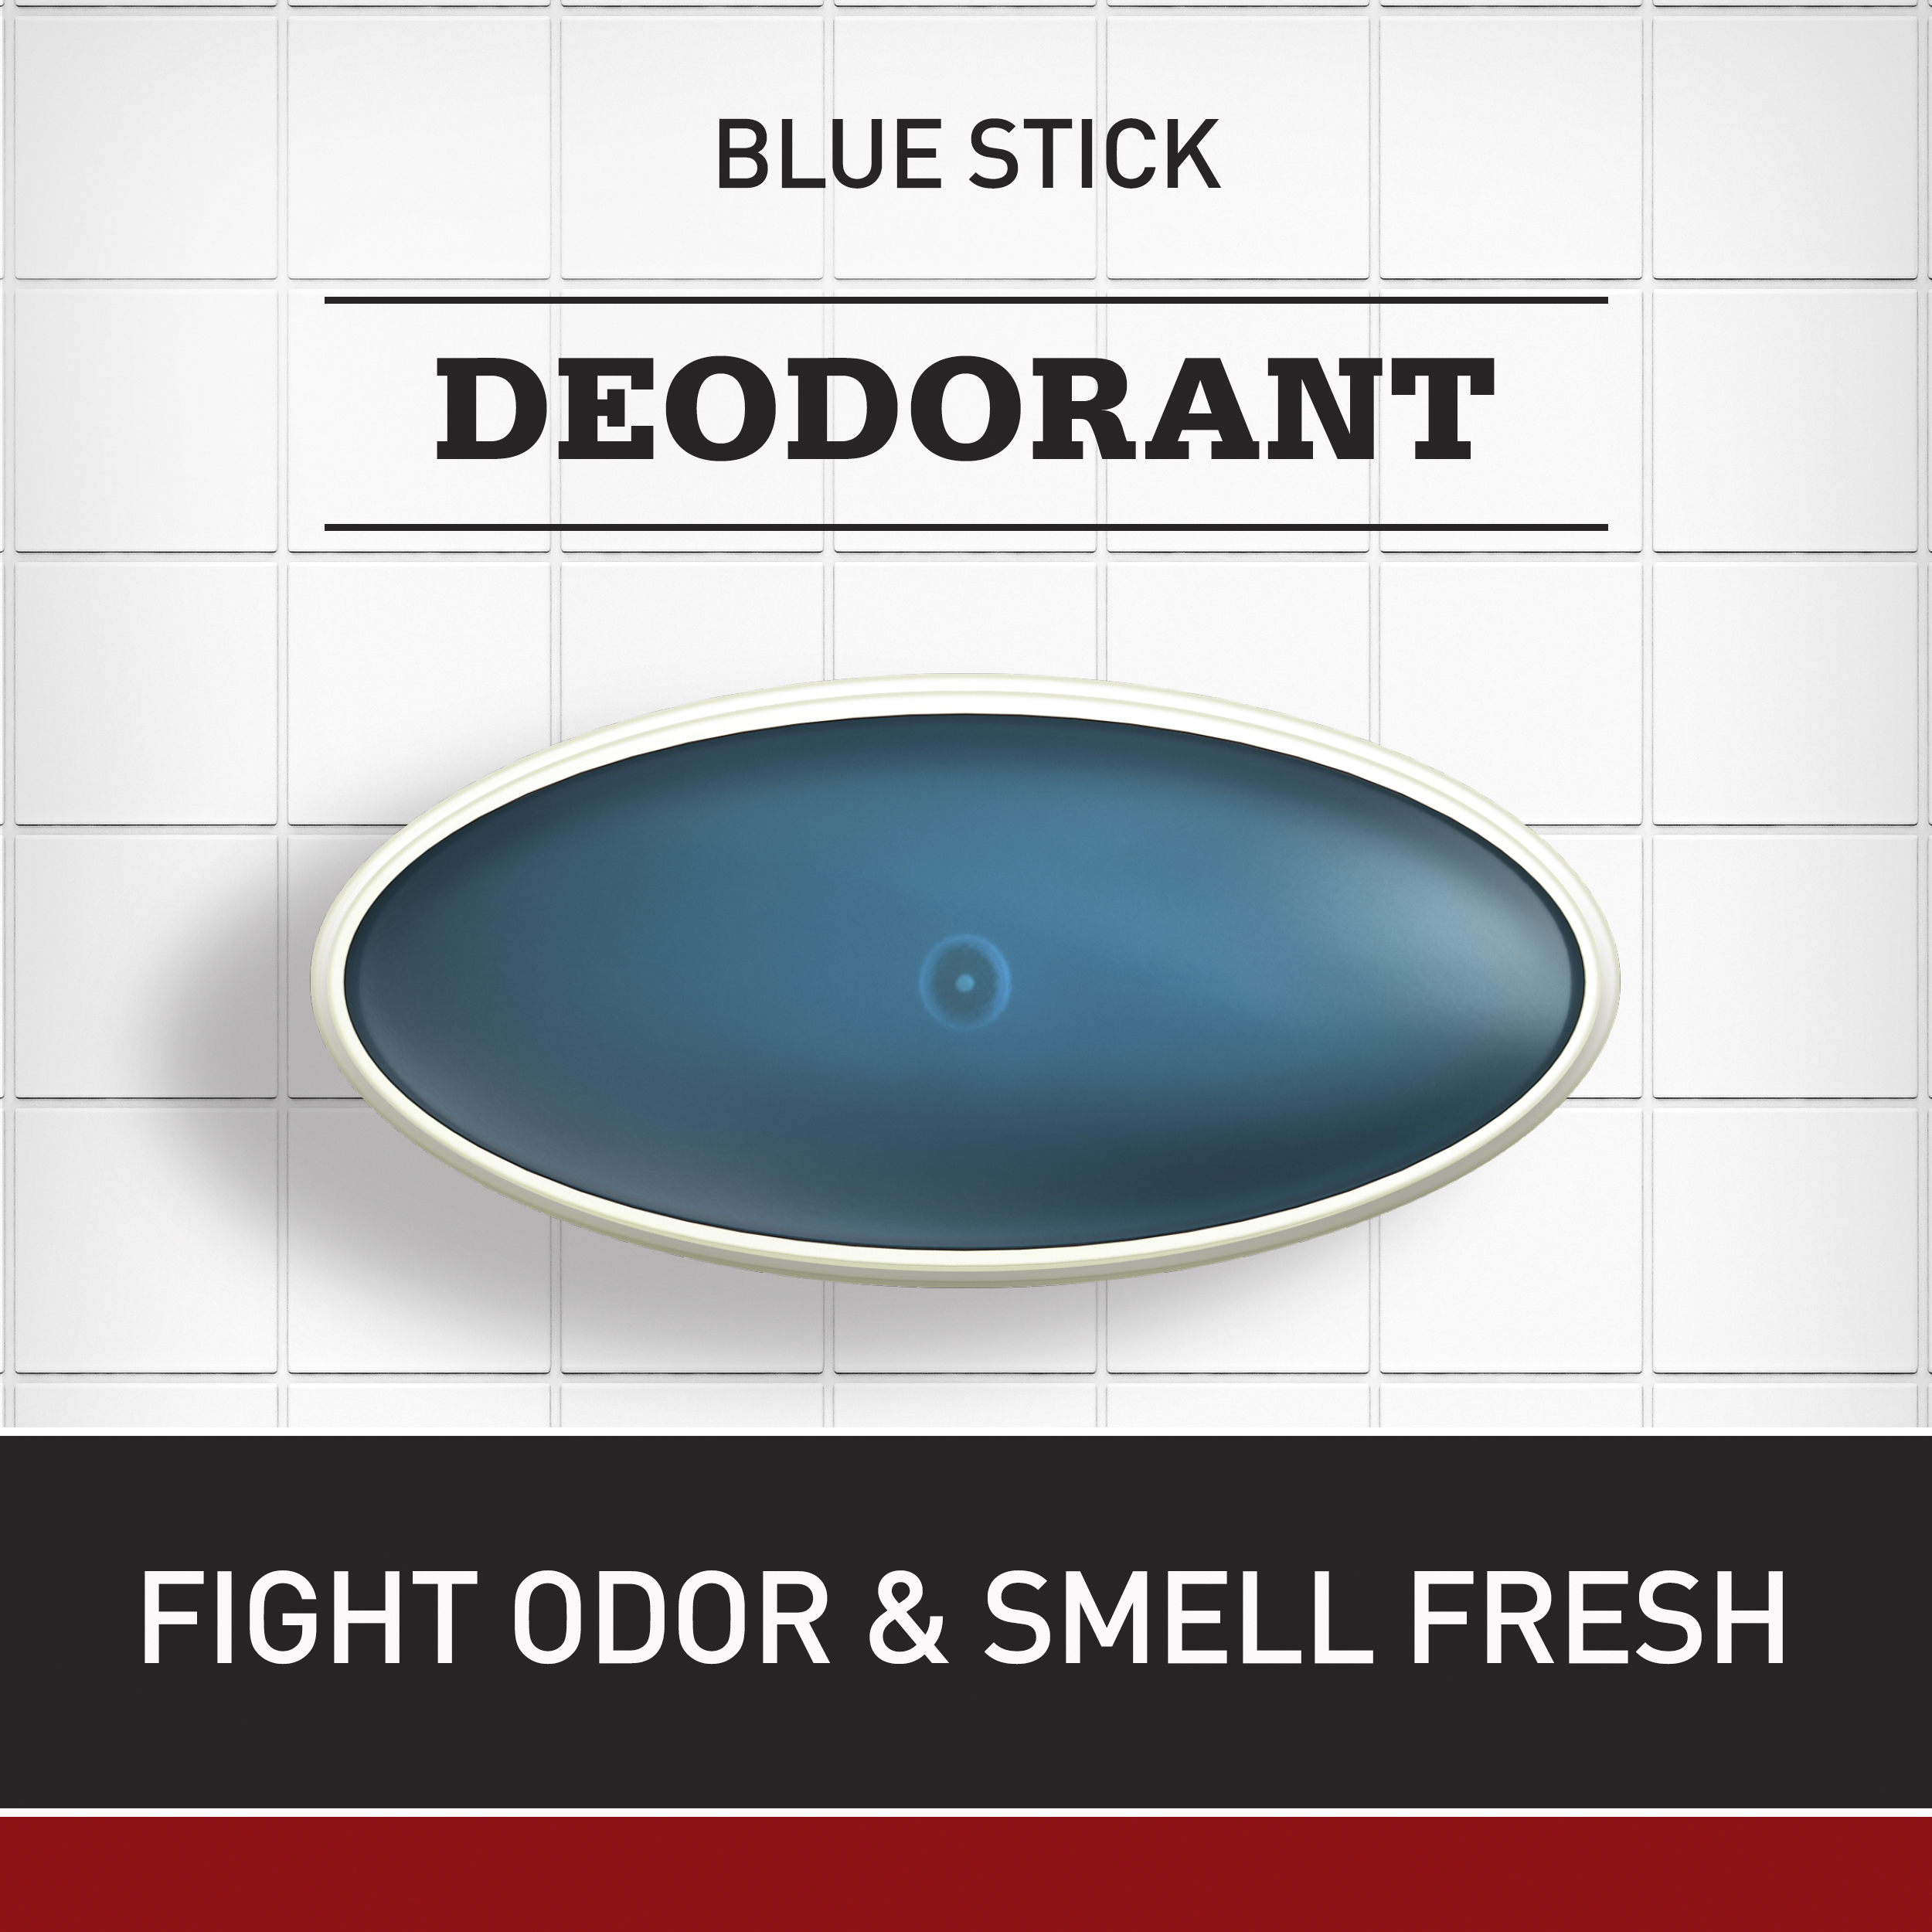 Old Spice Classic Deodorant for Men, Original Scent, 3.25 oz - image 2 of 6